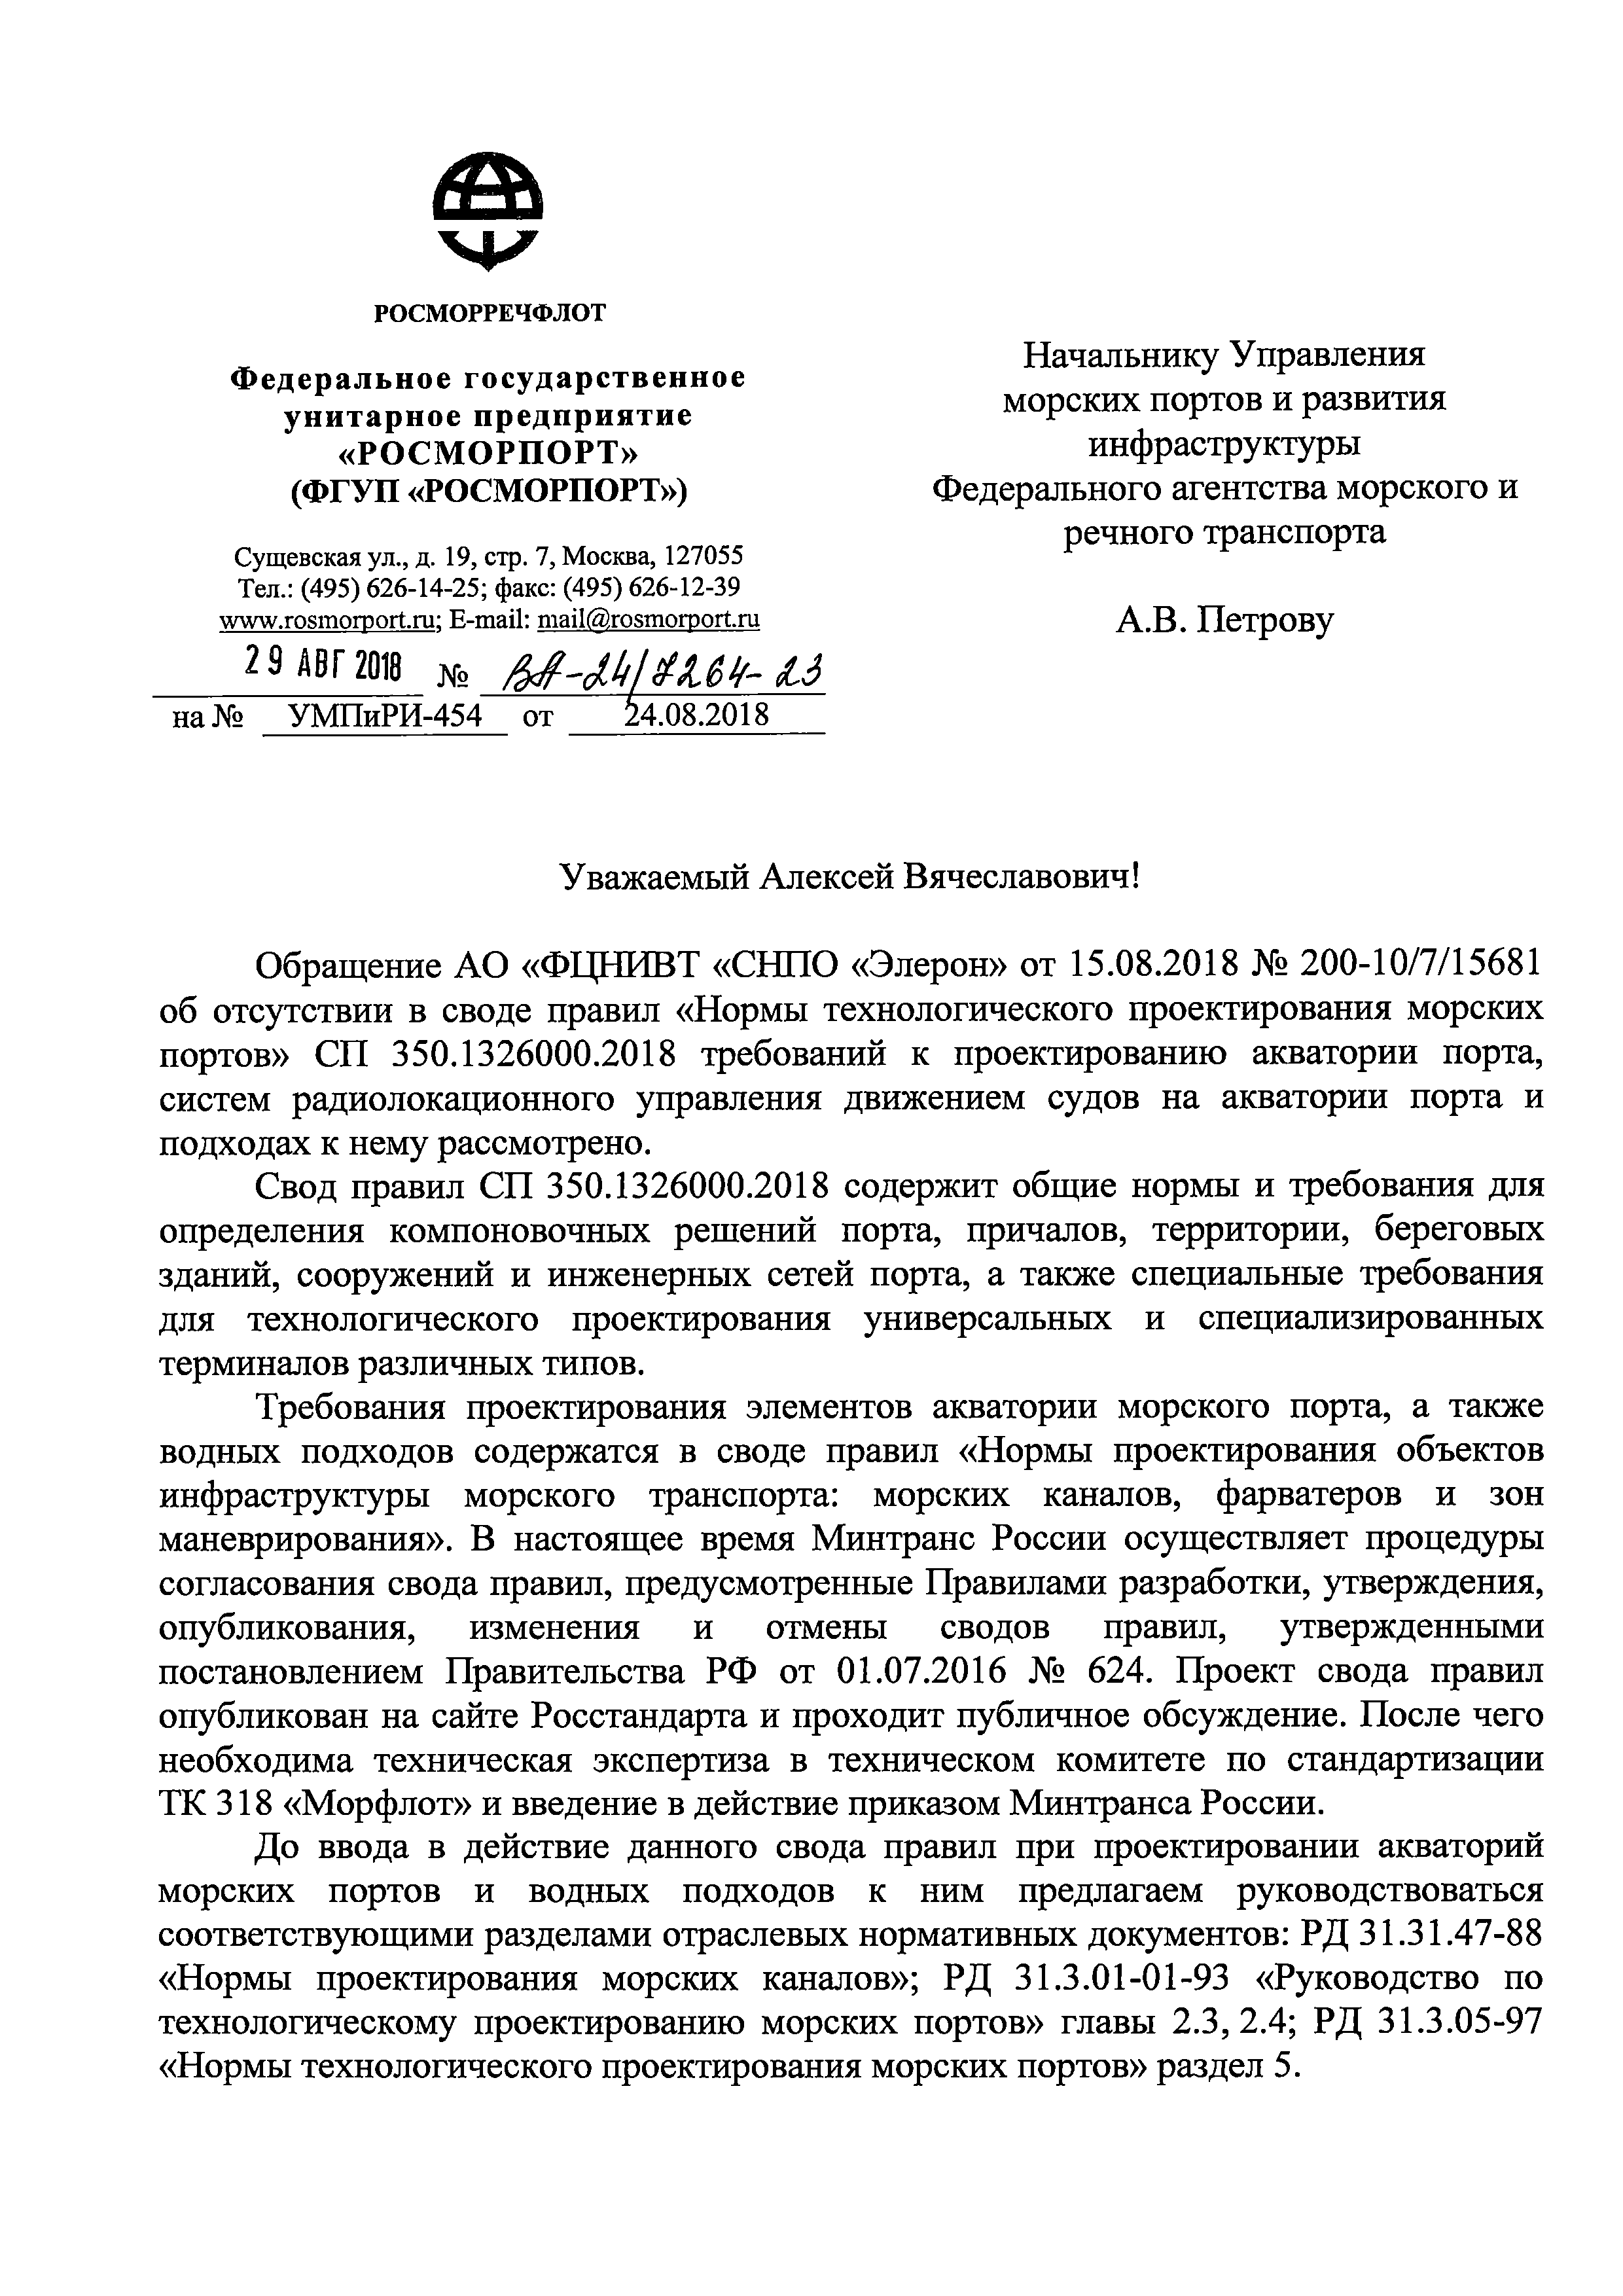 Письмо ВА-24/7264-23